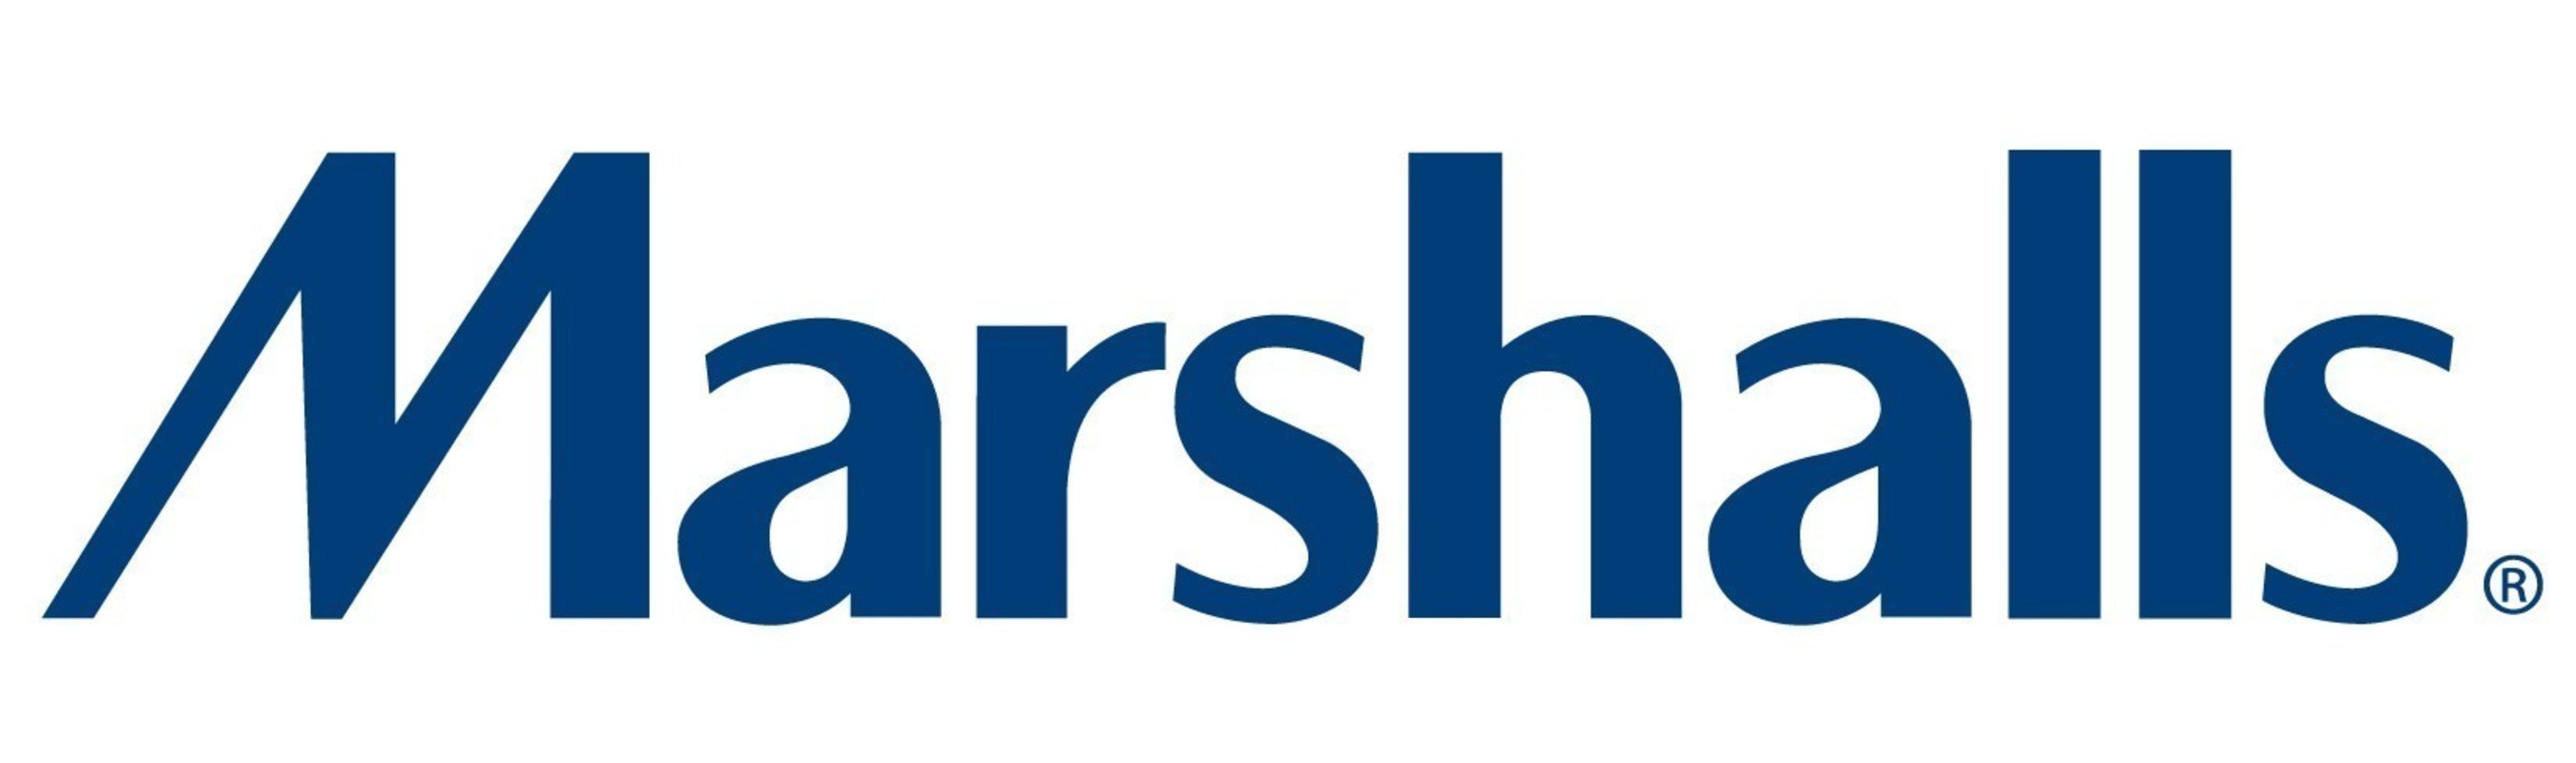 Marshalls_Logo